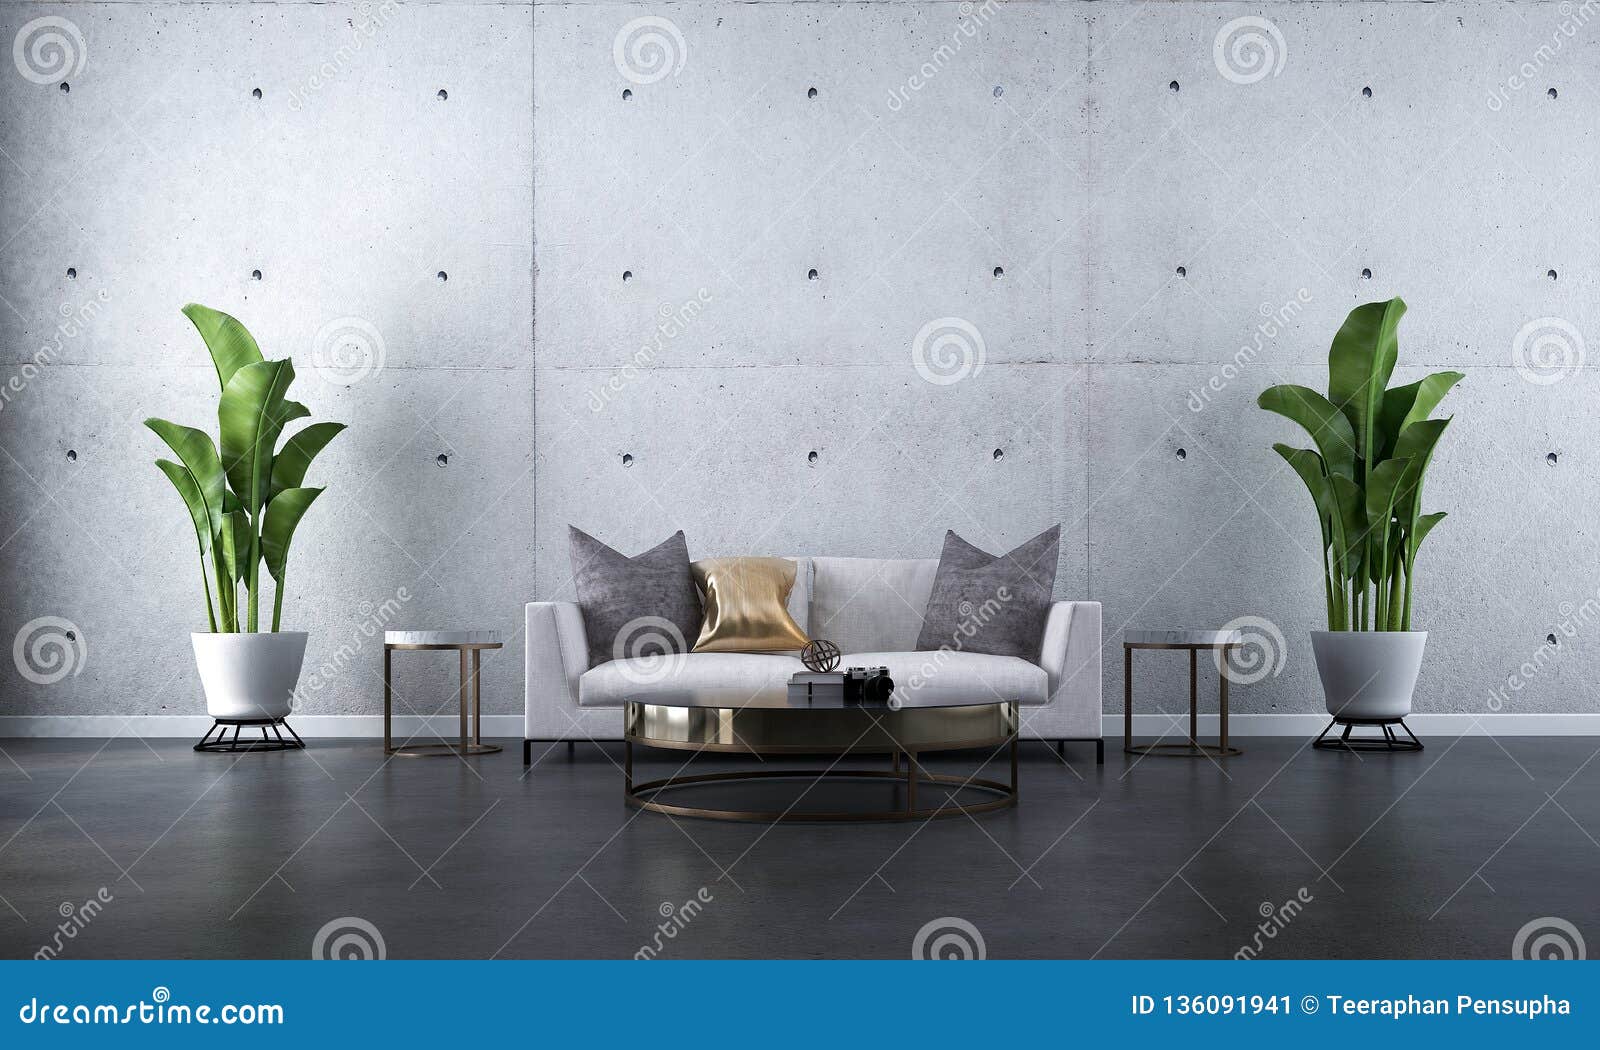 Tìm kiếm ý tưởng cho phòng khách tối giản và hiện đại? Hãy xem những hình ảnh liên quan đến thiết kế phòng khách tối giản. Thiết kế phòng khách tối giản và hiện đại sẽ mang đến cho bạn không gian thoải mái và sẽ tạo cảm giác thoải mái khi bạn ở trong nhà.